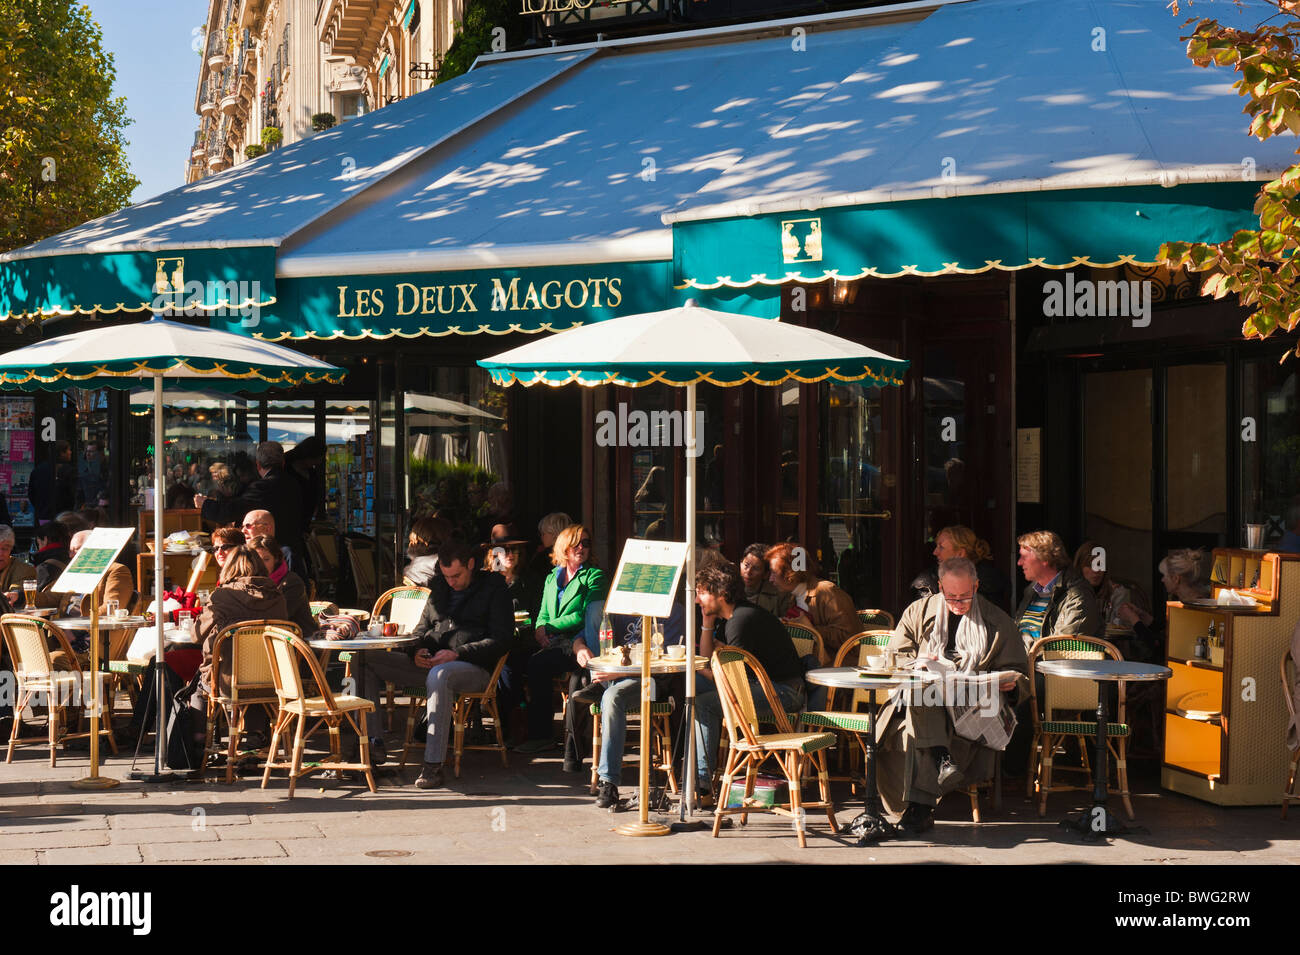 Cafe Les Deux Magots, Saint Germain des Pres, Paris, France Stock Photo